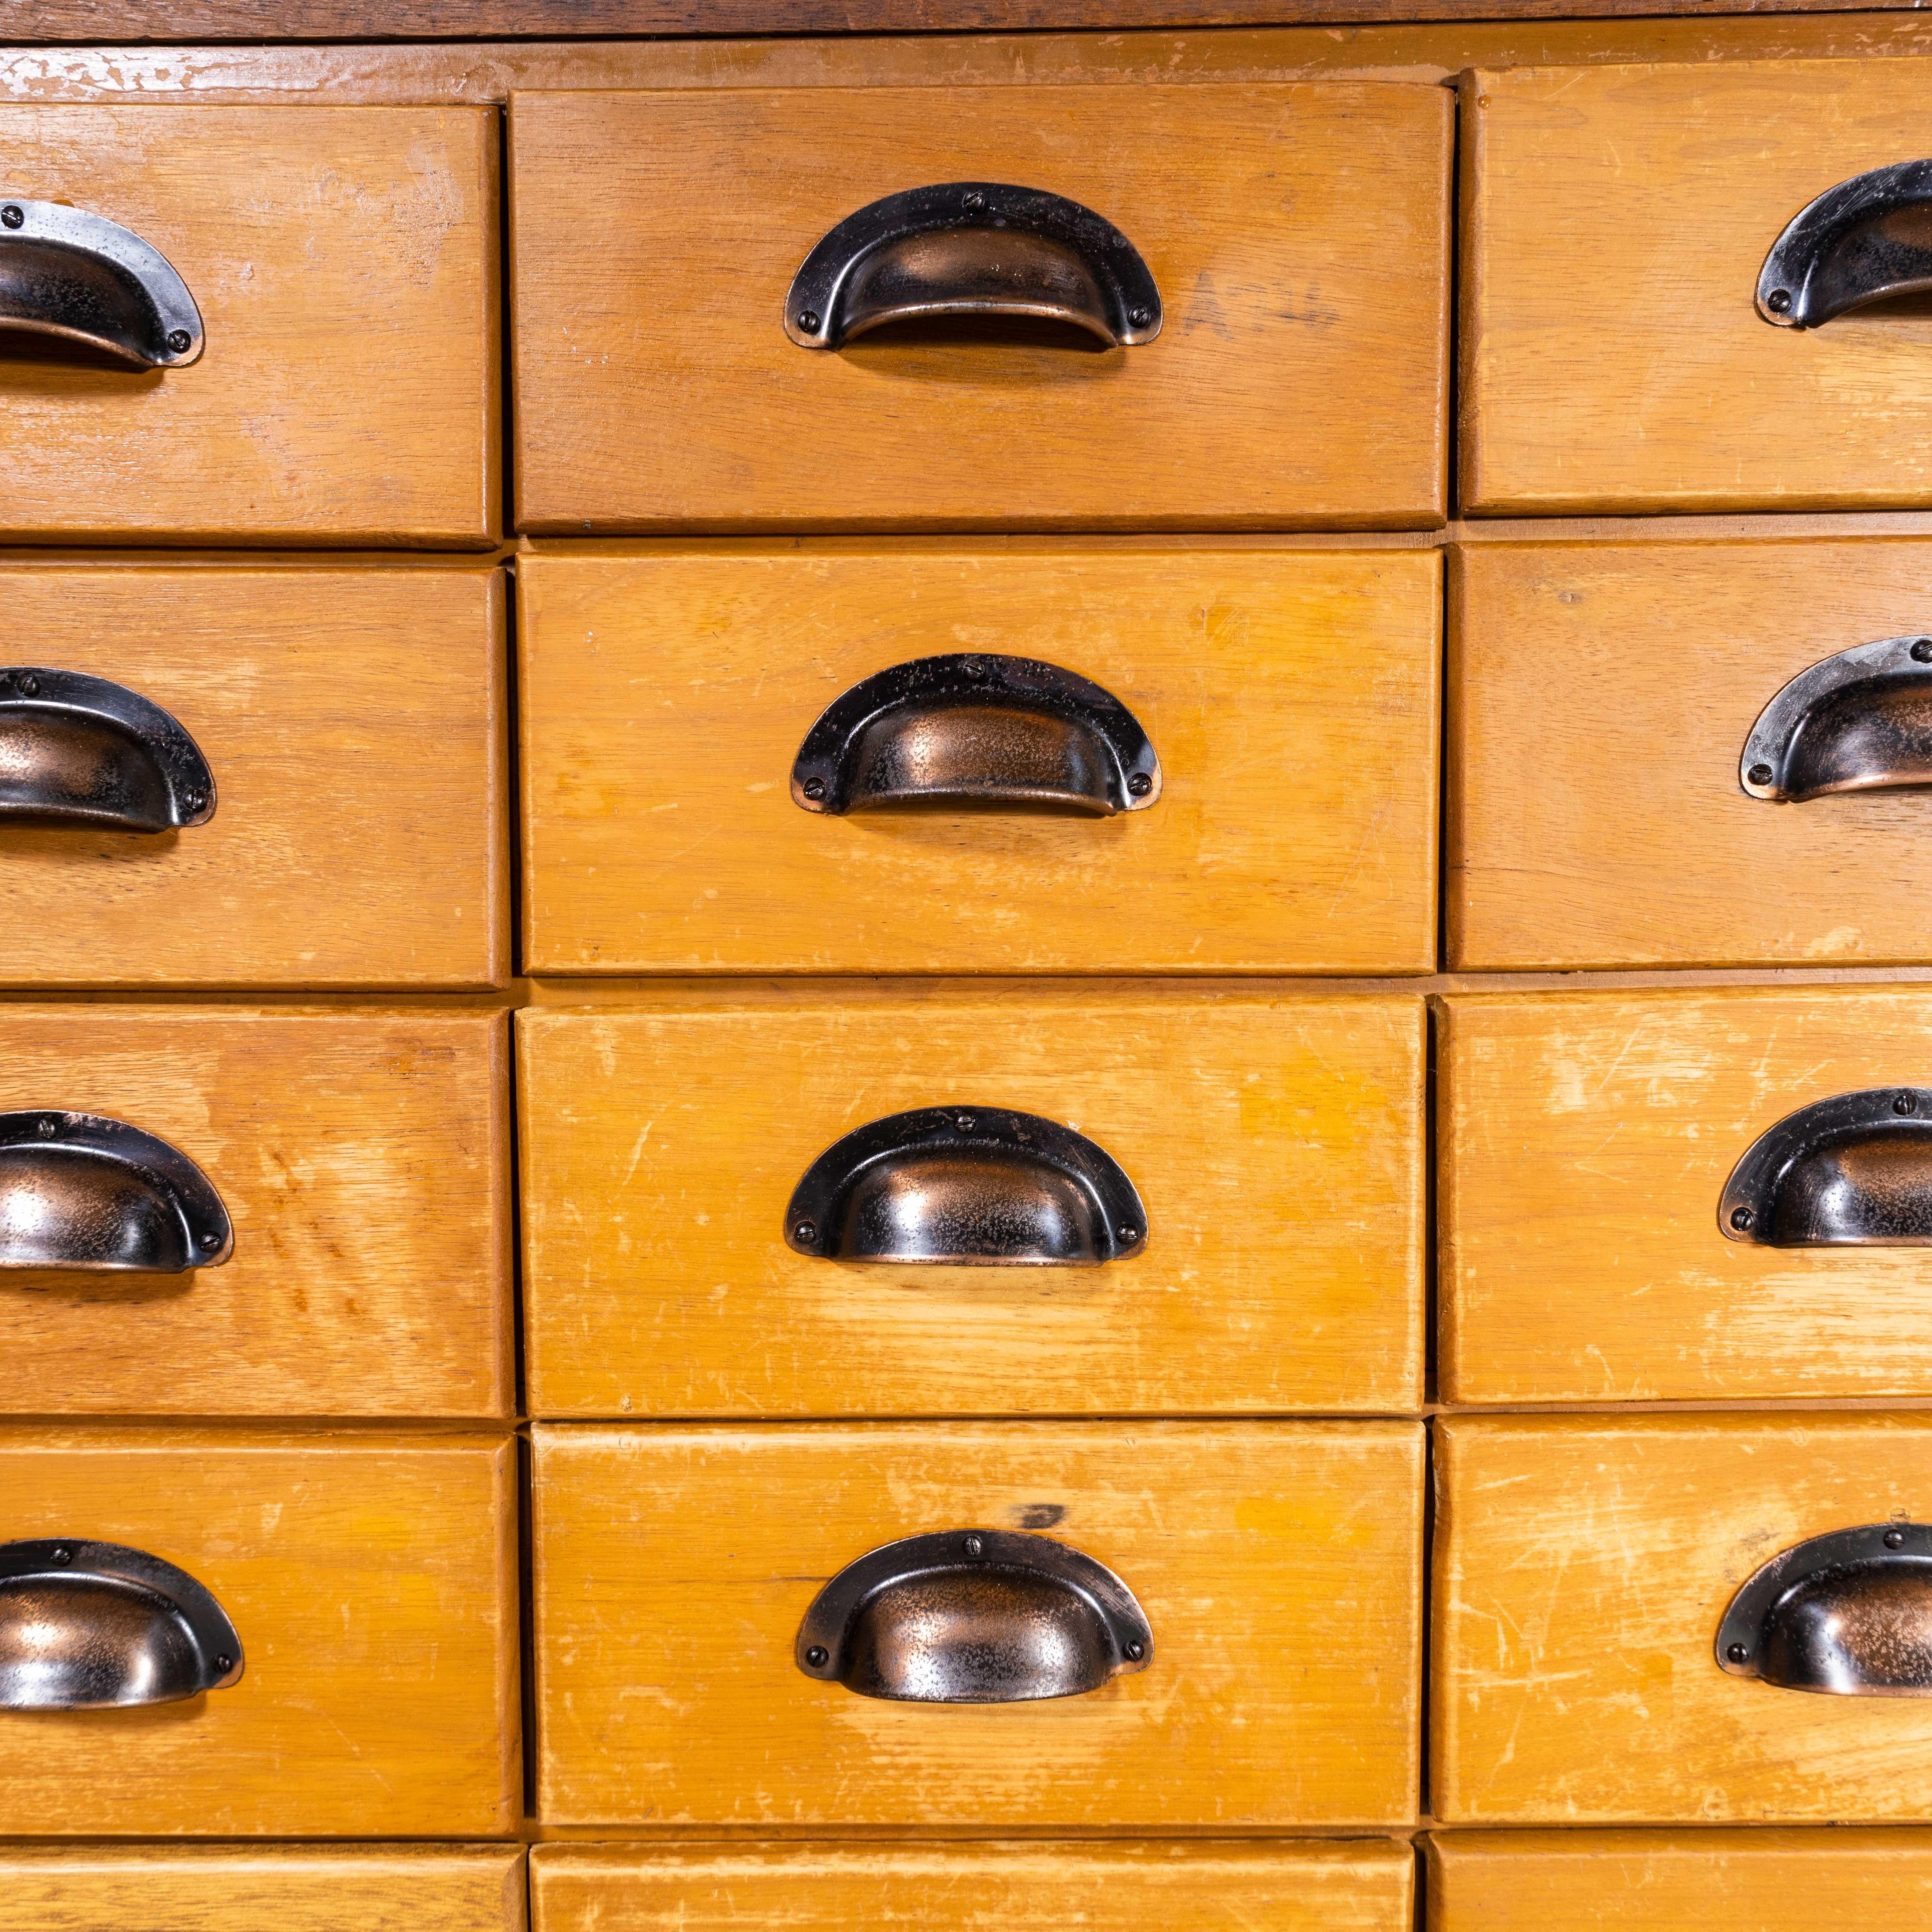 haberdashery drawers